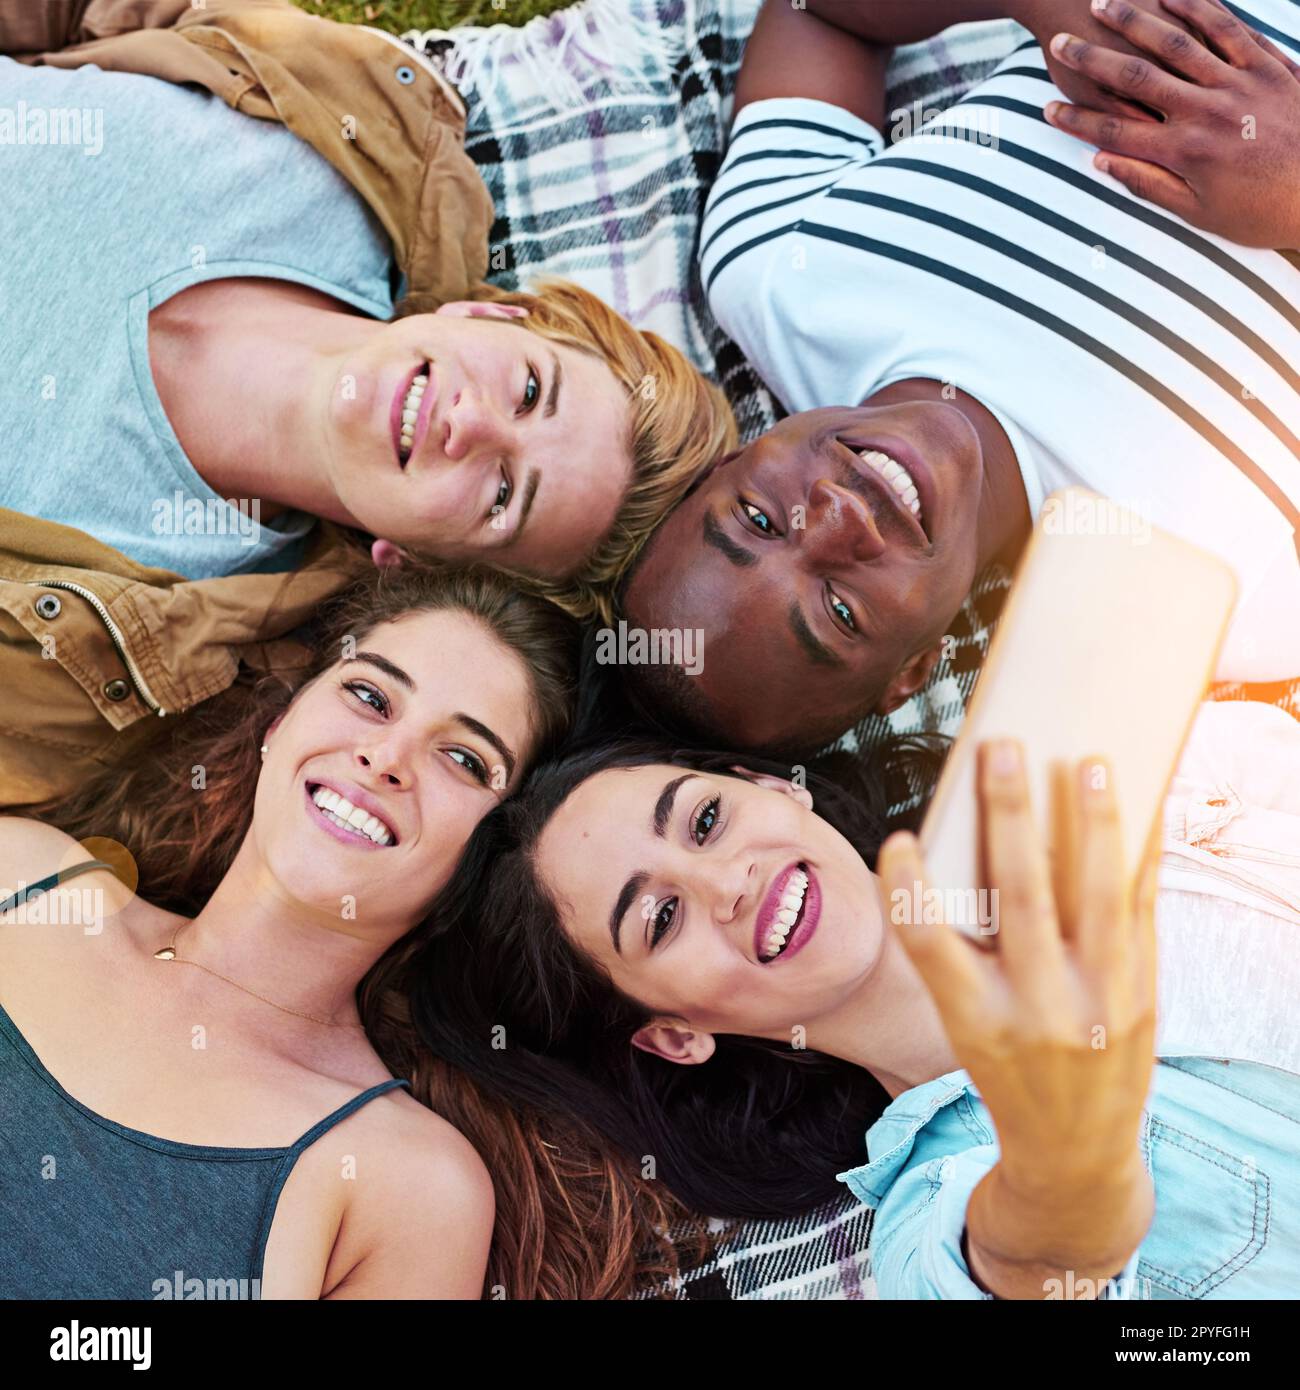 Il nostro insieme è kinda come per sempre. un gruppo di giovani amici che prendono un selfie insieme all'aperto. Foto Stock